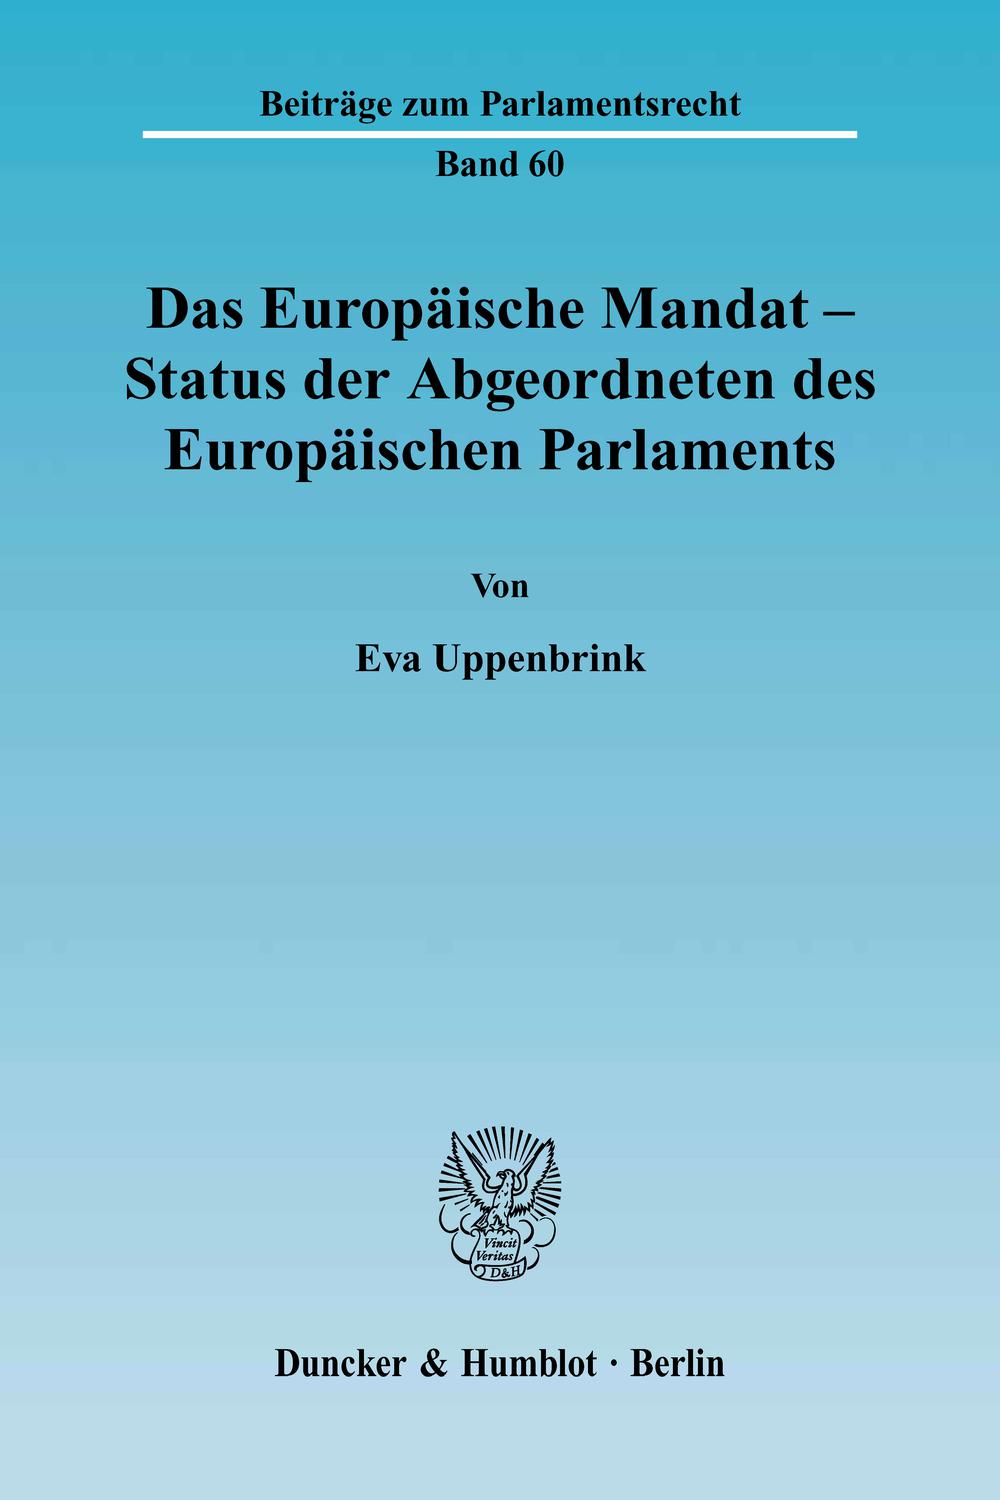 Das Europäische Mandat - Status der Abgeordneten des Europäischen Parlaments. - Eva Uppenbrink